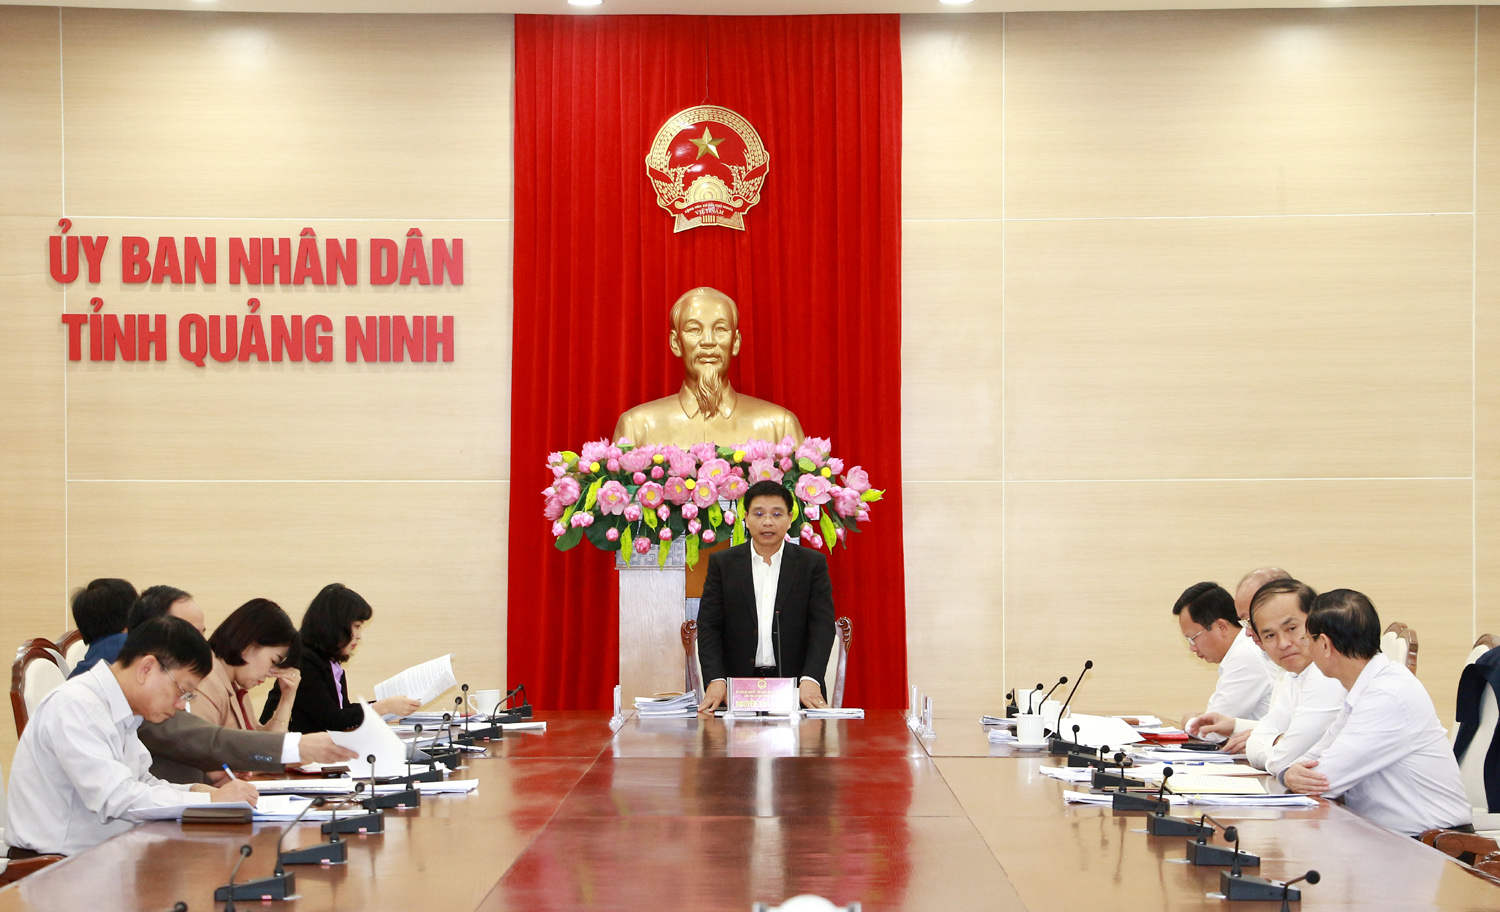 Đồng chí Nguyễn Văn Thắng, Phó Bí thư Tỉnh ủy, Chủ tịch UBND tỉnh, phát biểu kết luận.